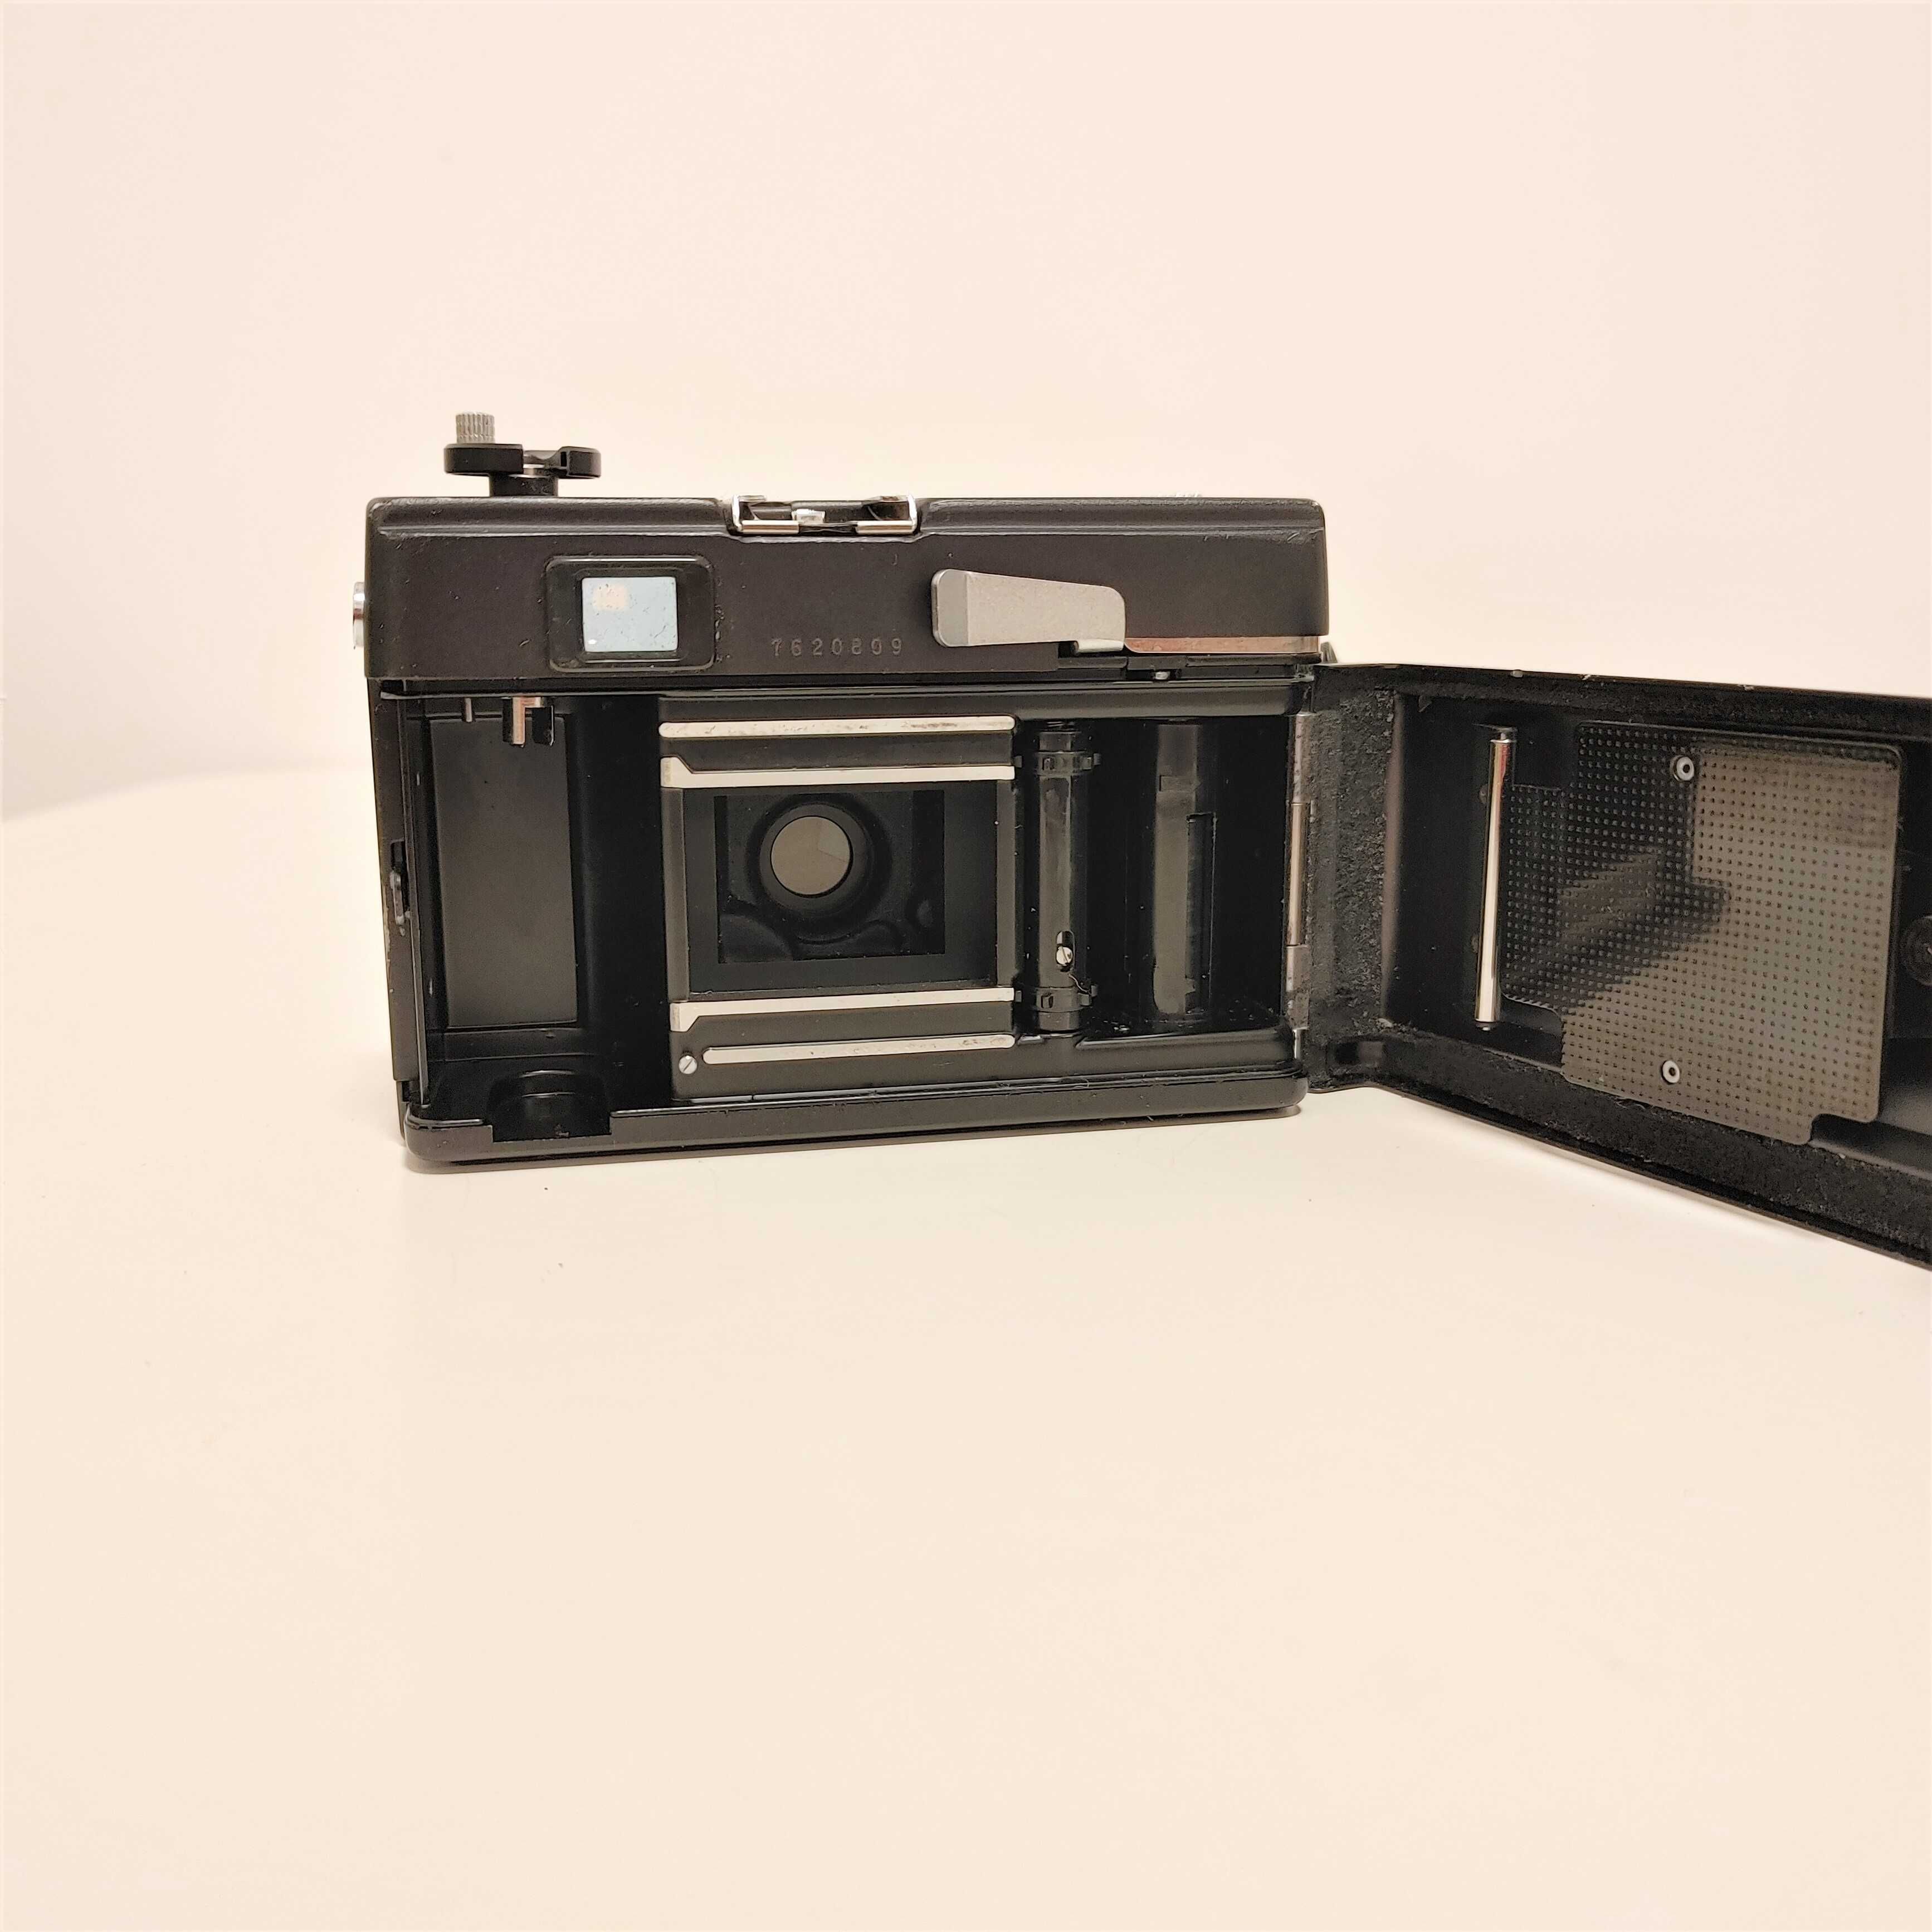 Aparat fotograficzny COSINA Compact 35 E kolekcjonerski  w BDB stanie